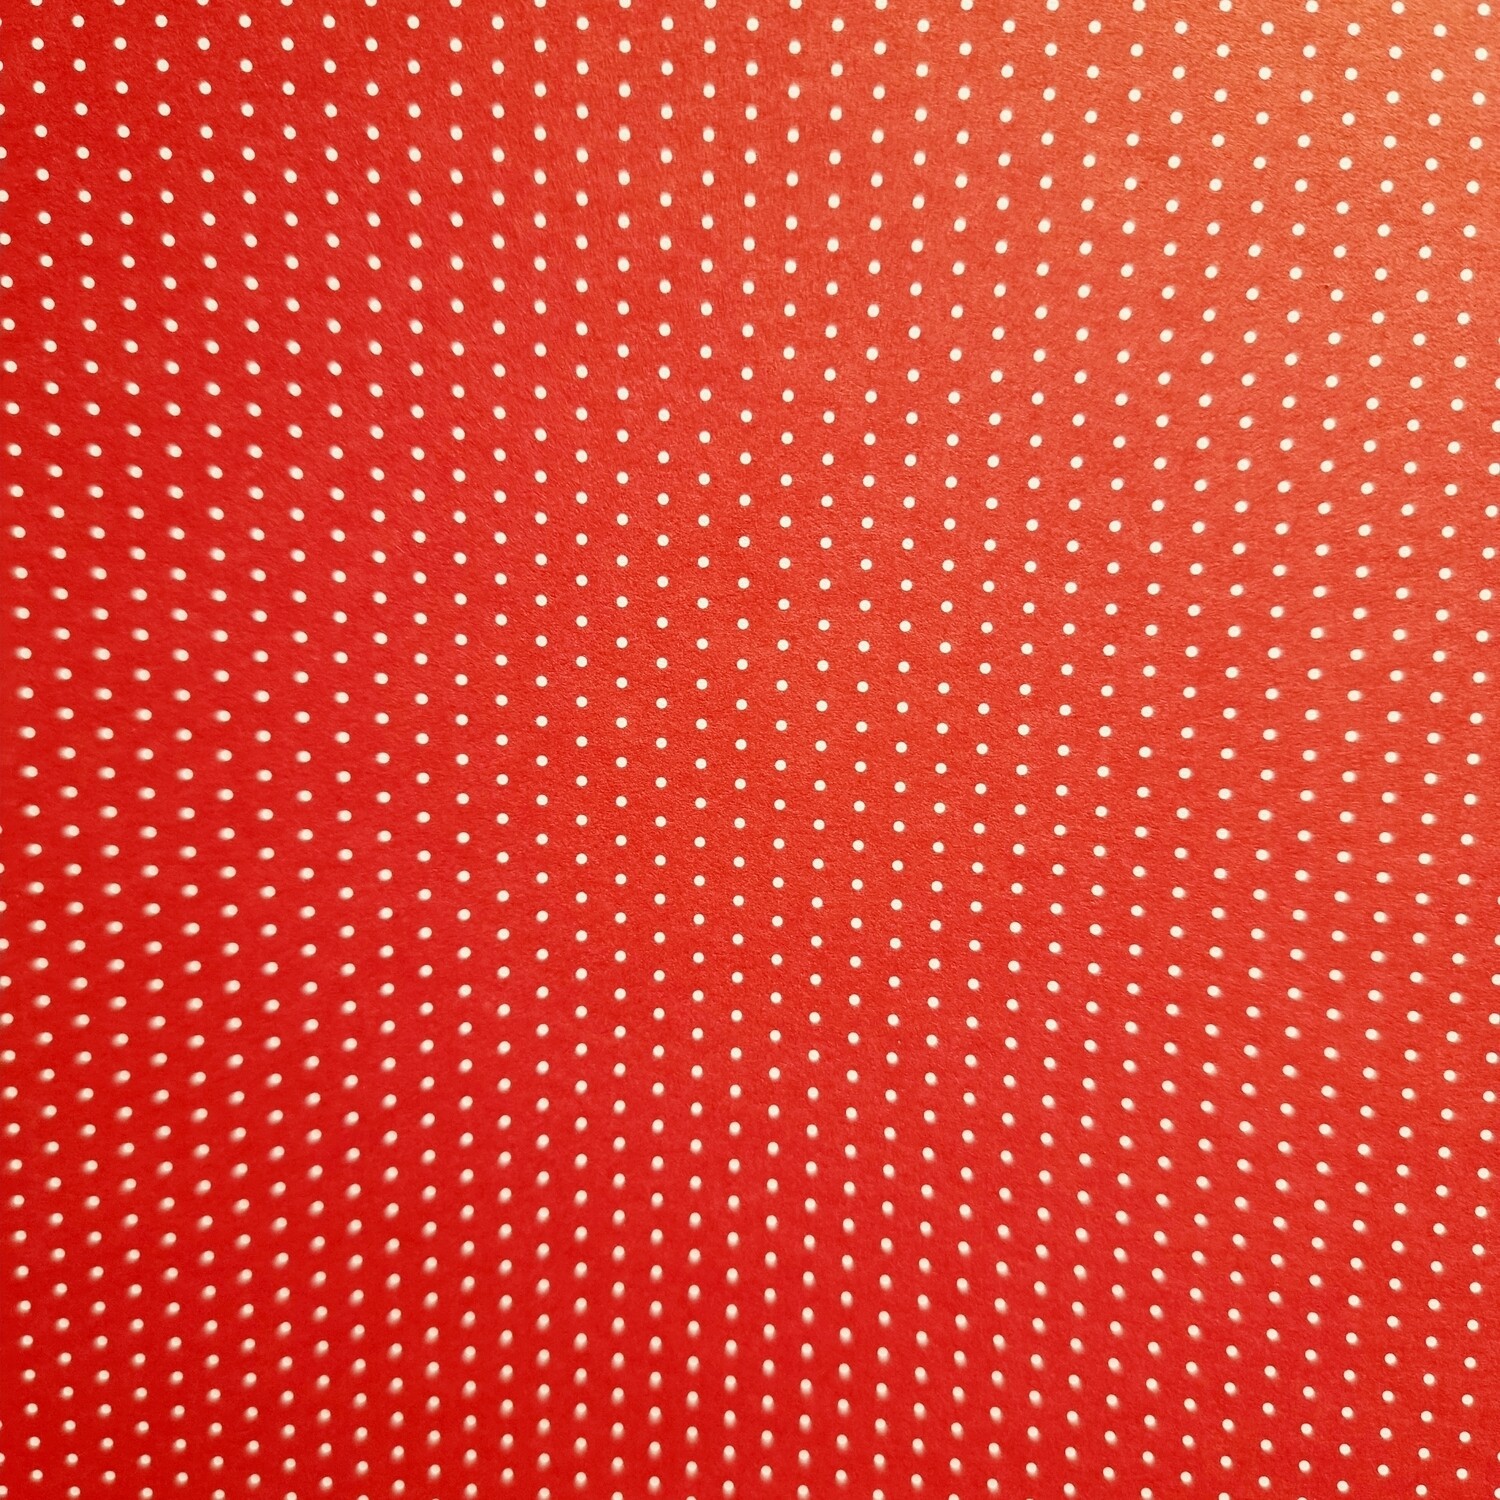 Motivpapier Mini Punkte rot mit weißen Punkten